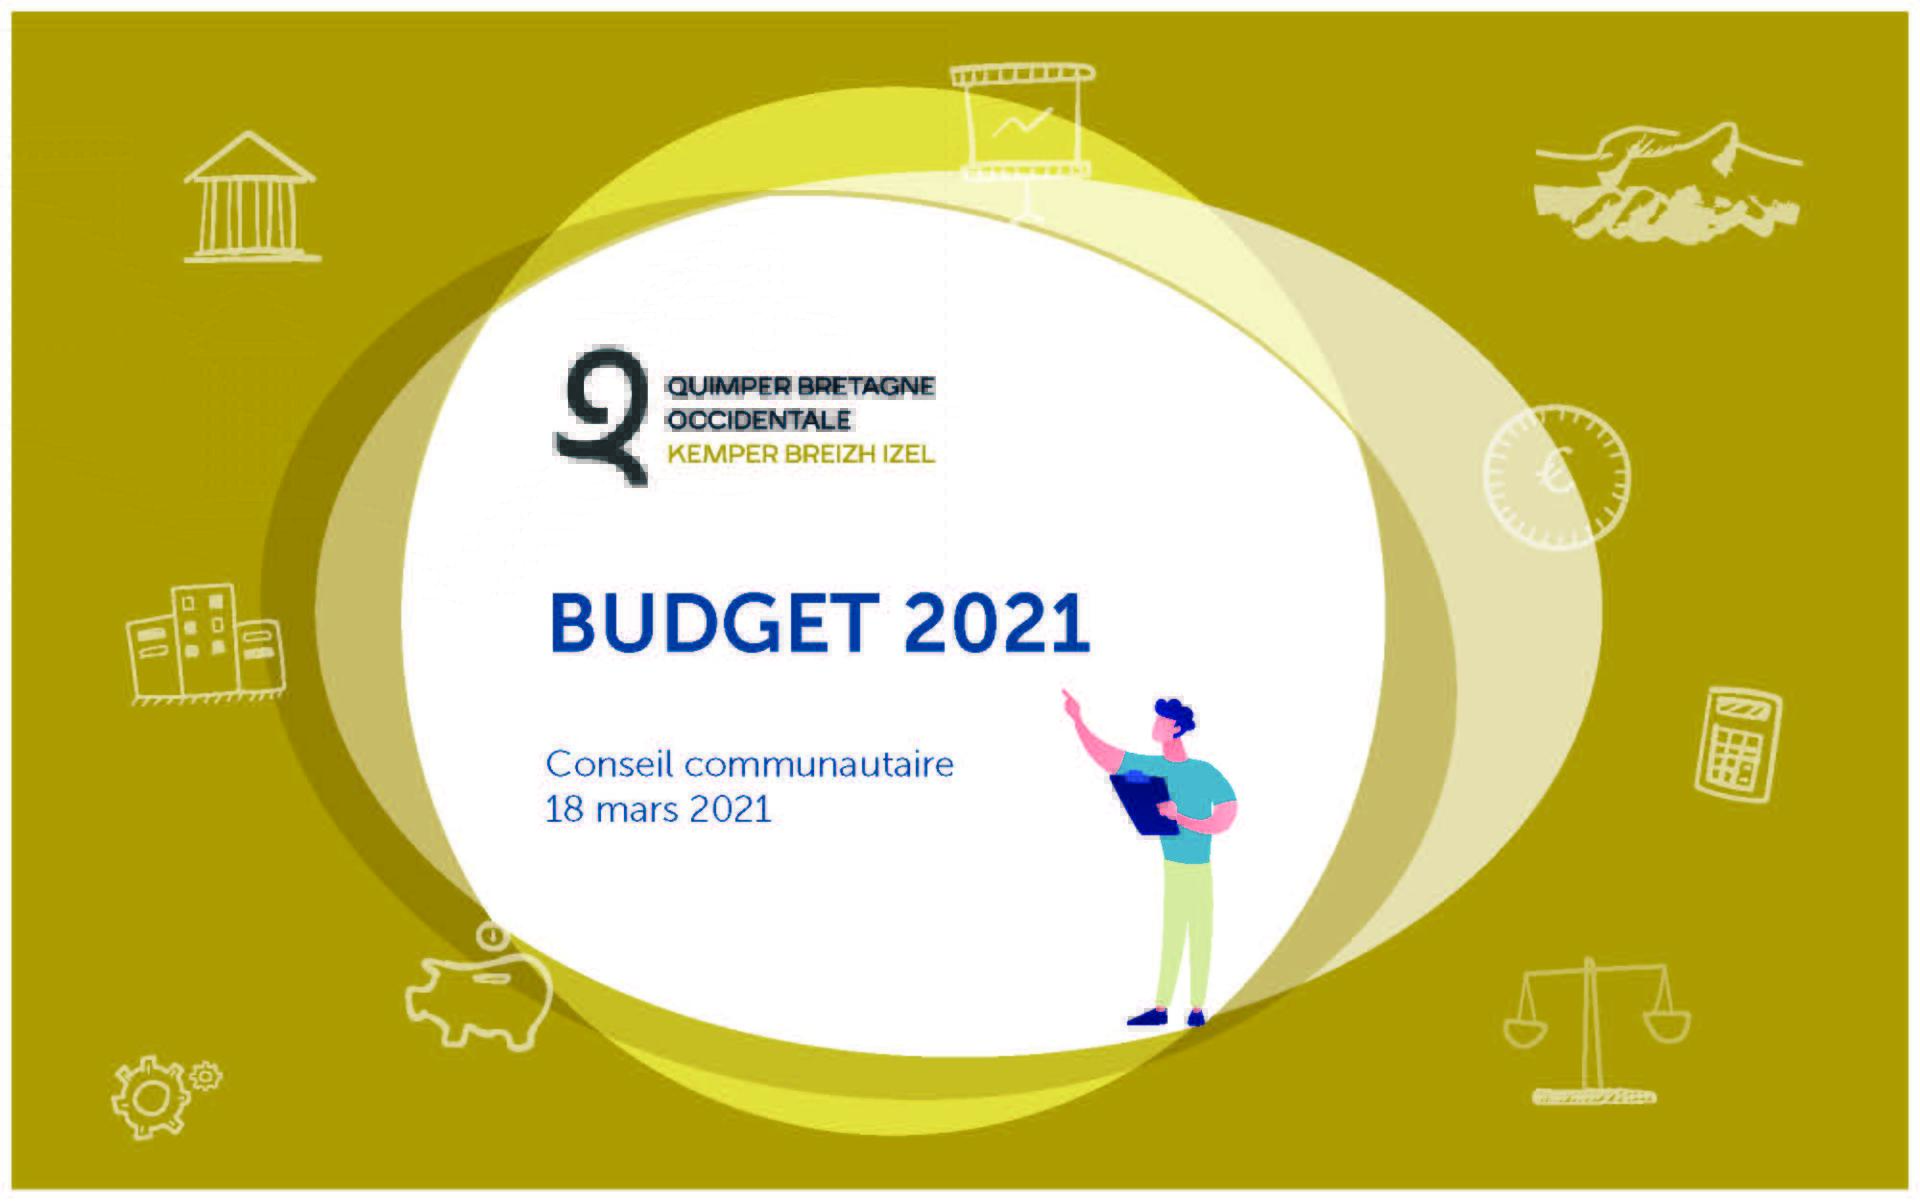 Budget Quimper Bretagne Occidentale 2021